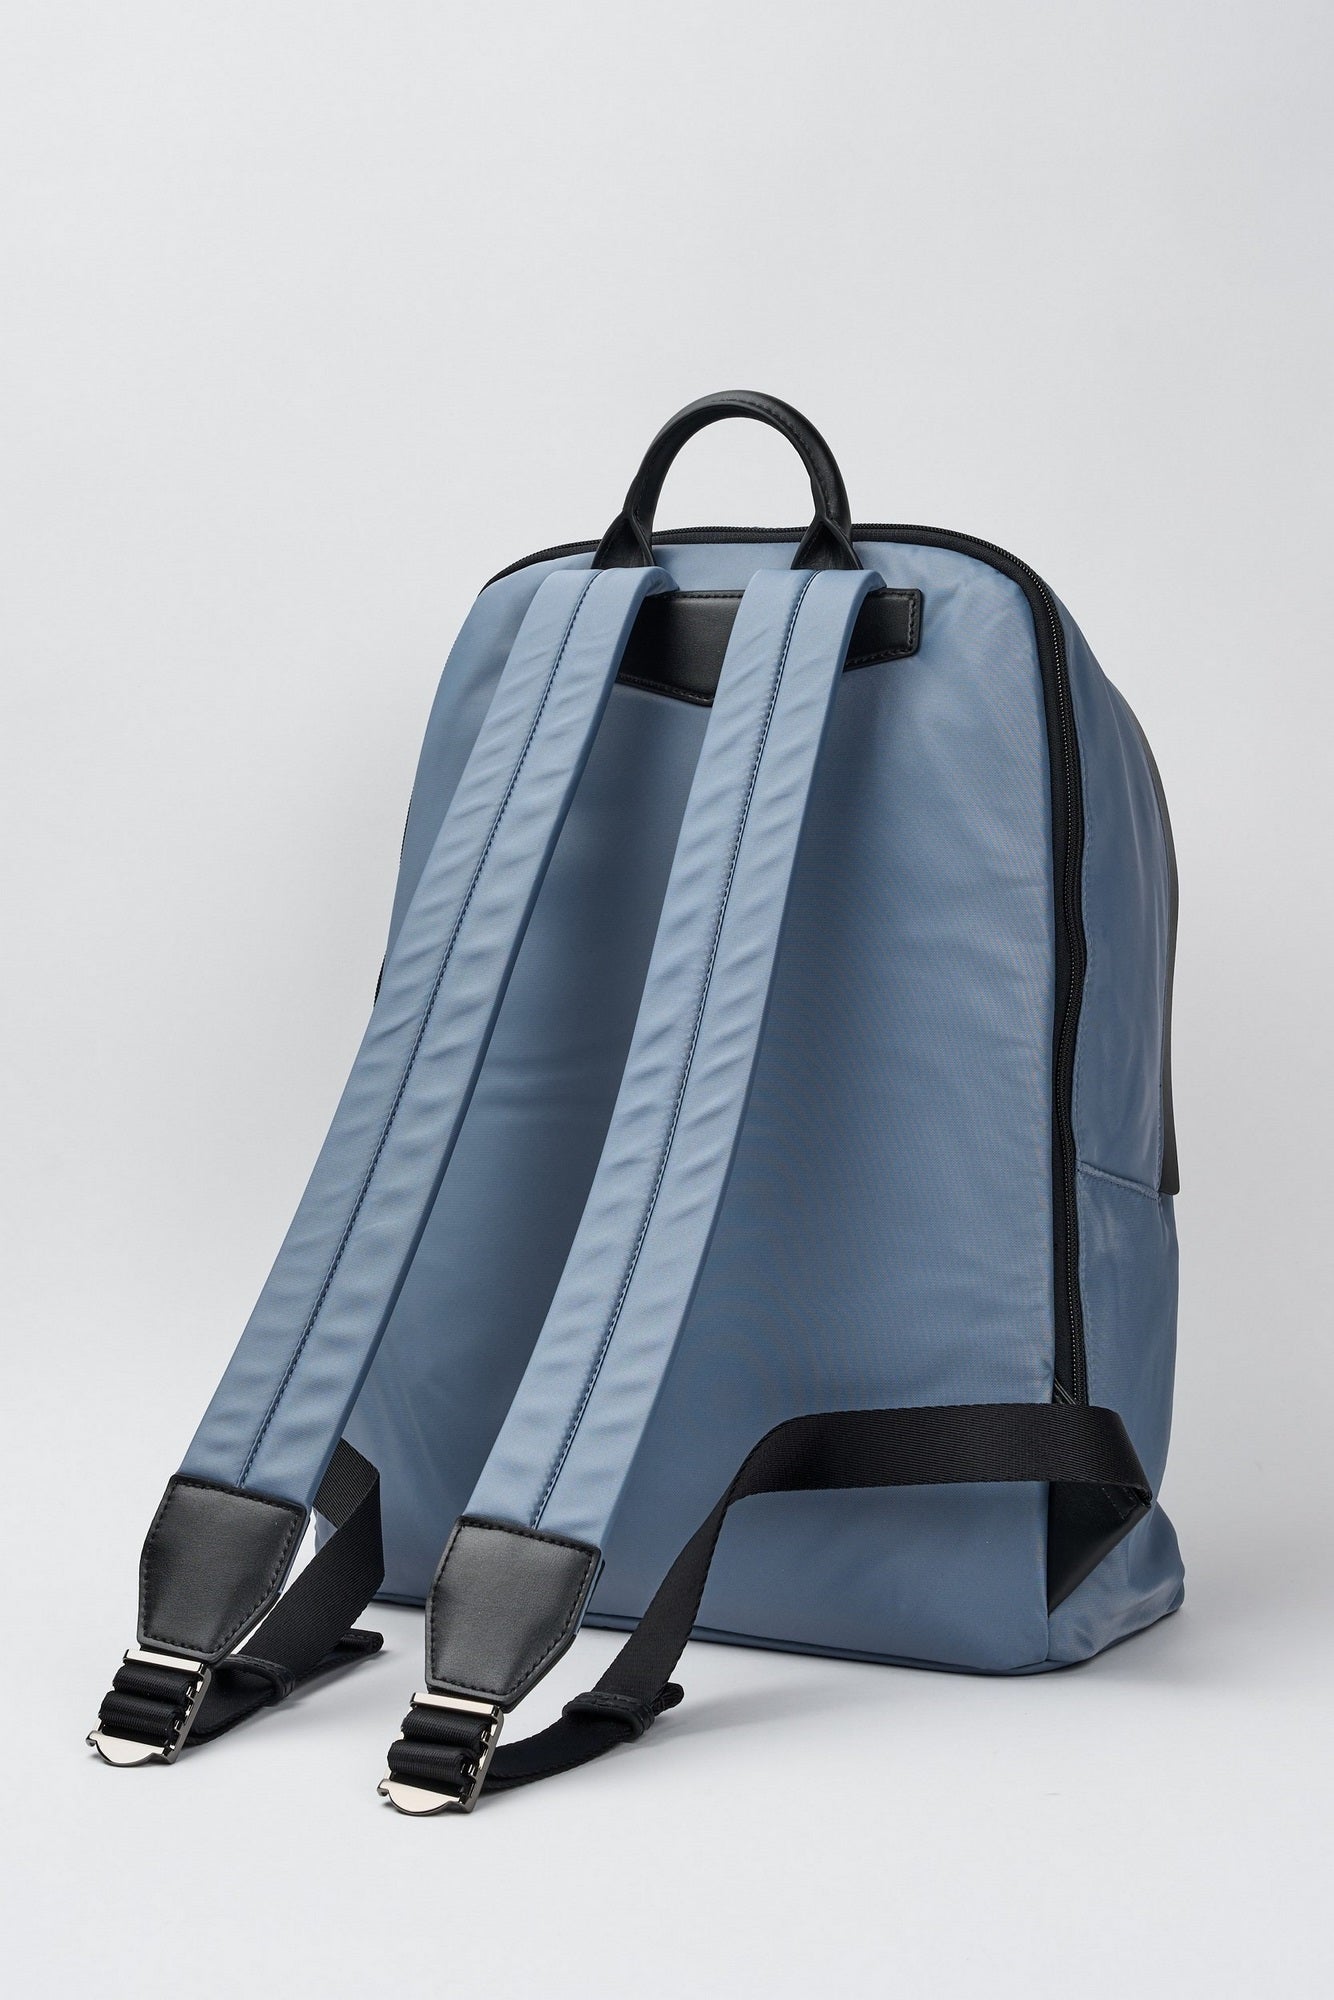 Emporio Armani Rucksack aus recyceltem Nylon in Blau mit Nachhaltigkeitswerten-3